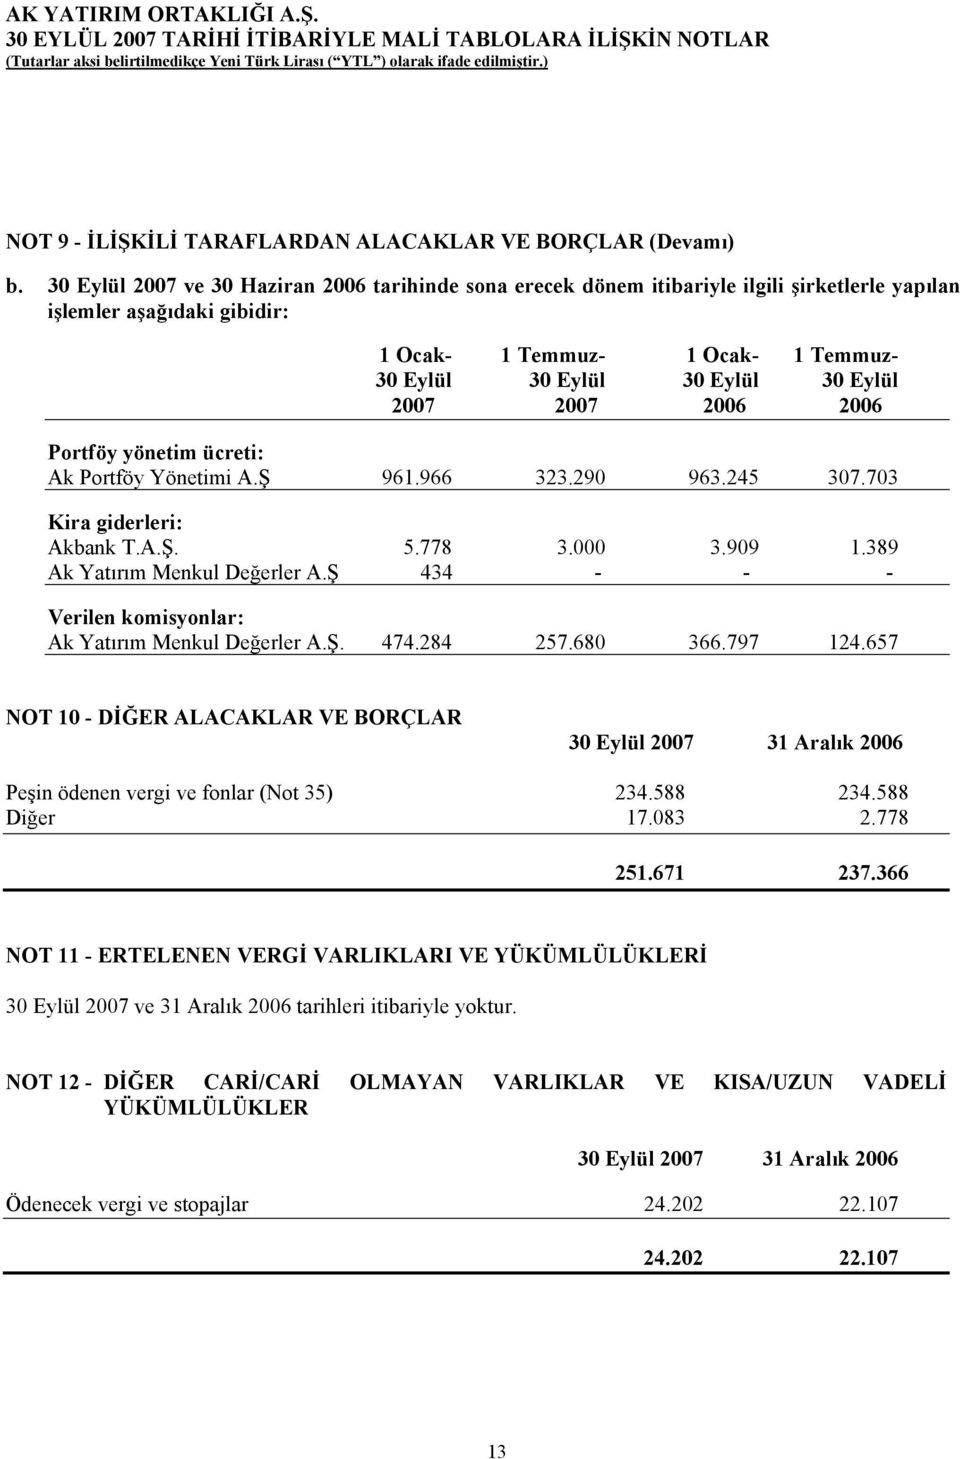 2007 2007 2006 2006 Portföy yönetim ücreti: Ak Portföy Yönetimi A.Ş 961.966 323.290 963.245 307.703 Kira giderleri: Akbank T.A.Ş. 5.778 3.000 3.909 1.389 Ak Yatırım Menkul Değerler A.